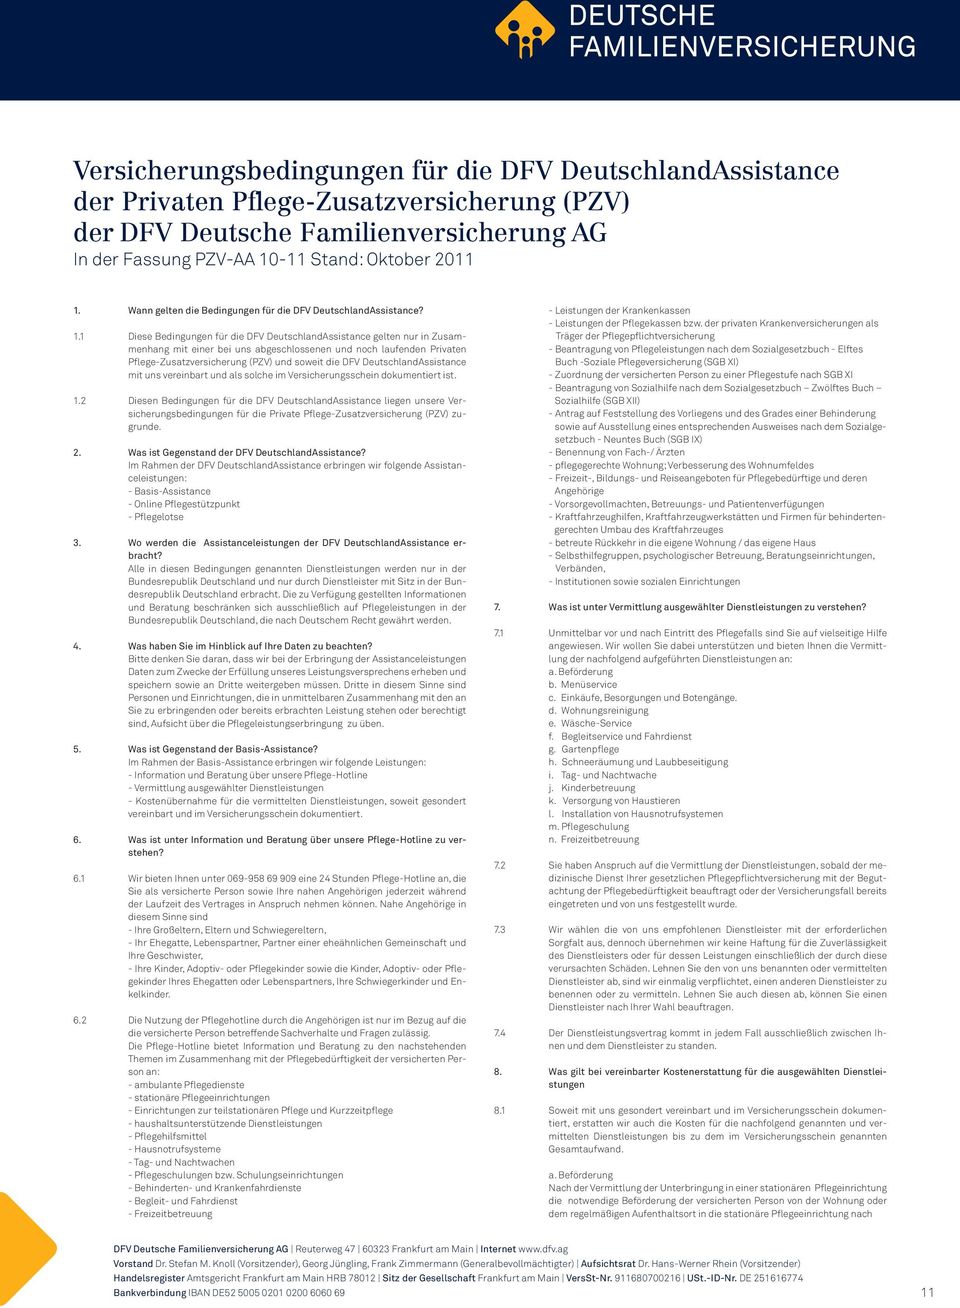 1 Diese Bedingungen für die DFV DeutschlandAssistance gelten nur in Zusammenhang mit einer bei uns abgeschlossenen und noch laufenden Privaten Pflege-Zusatzversicherung (PZV) und soweit die DFV